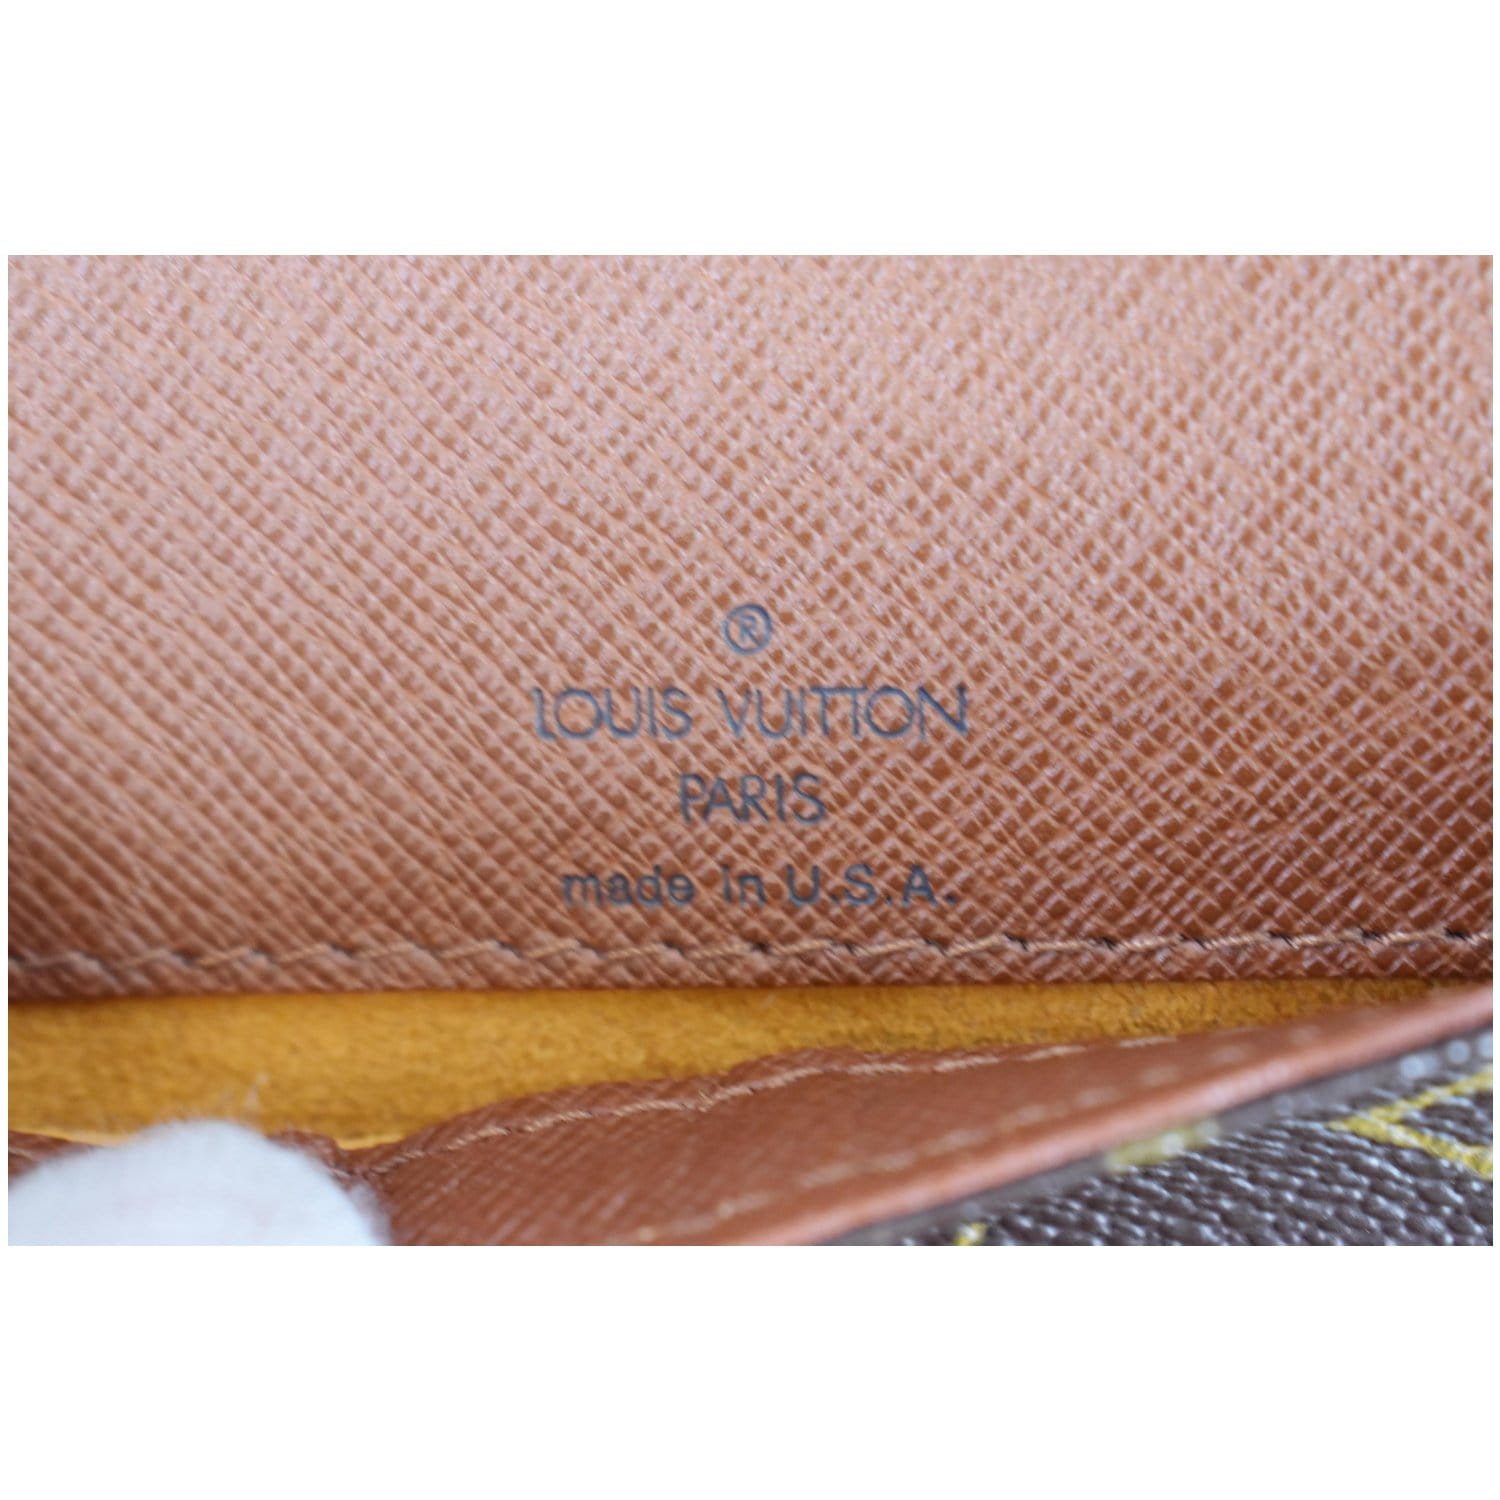 Authenticated used Louis Vuitton Shoulder Bag Monogram Musette Tango SP0071 Brown Women's Canvas, Adult Unisex, Size: (HxWxD): 19cm x 25cm x 7cm /